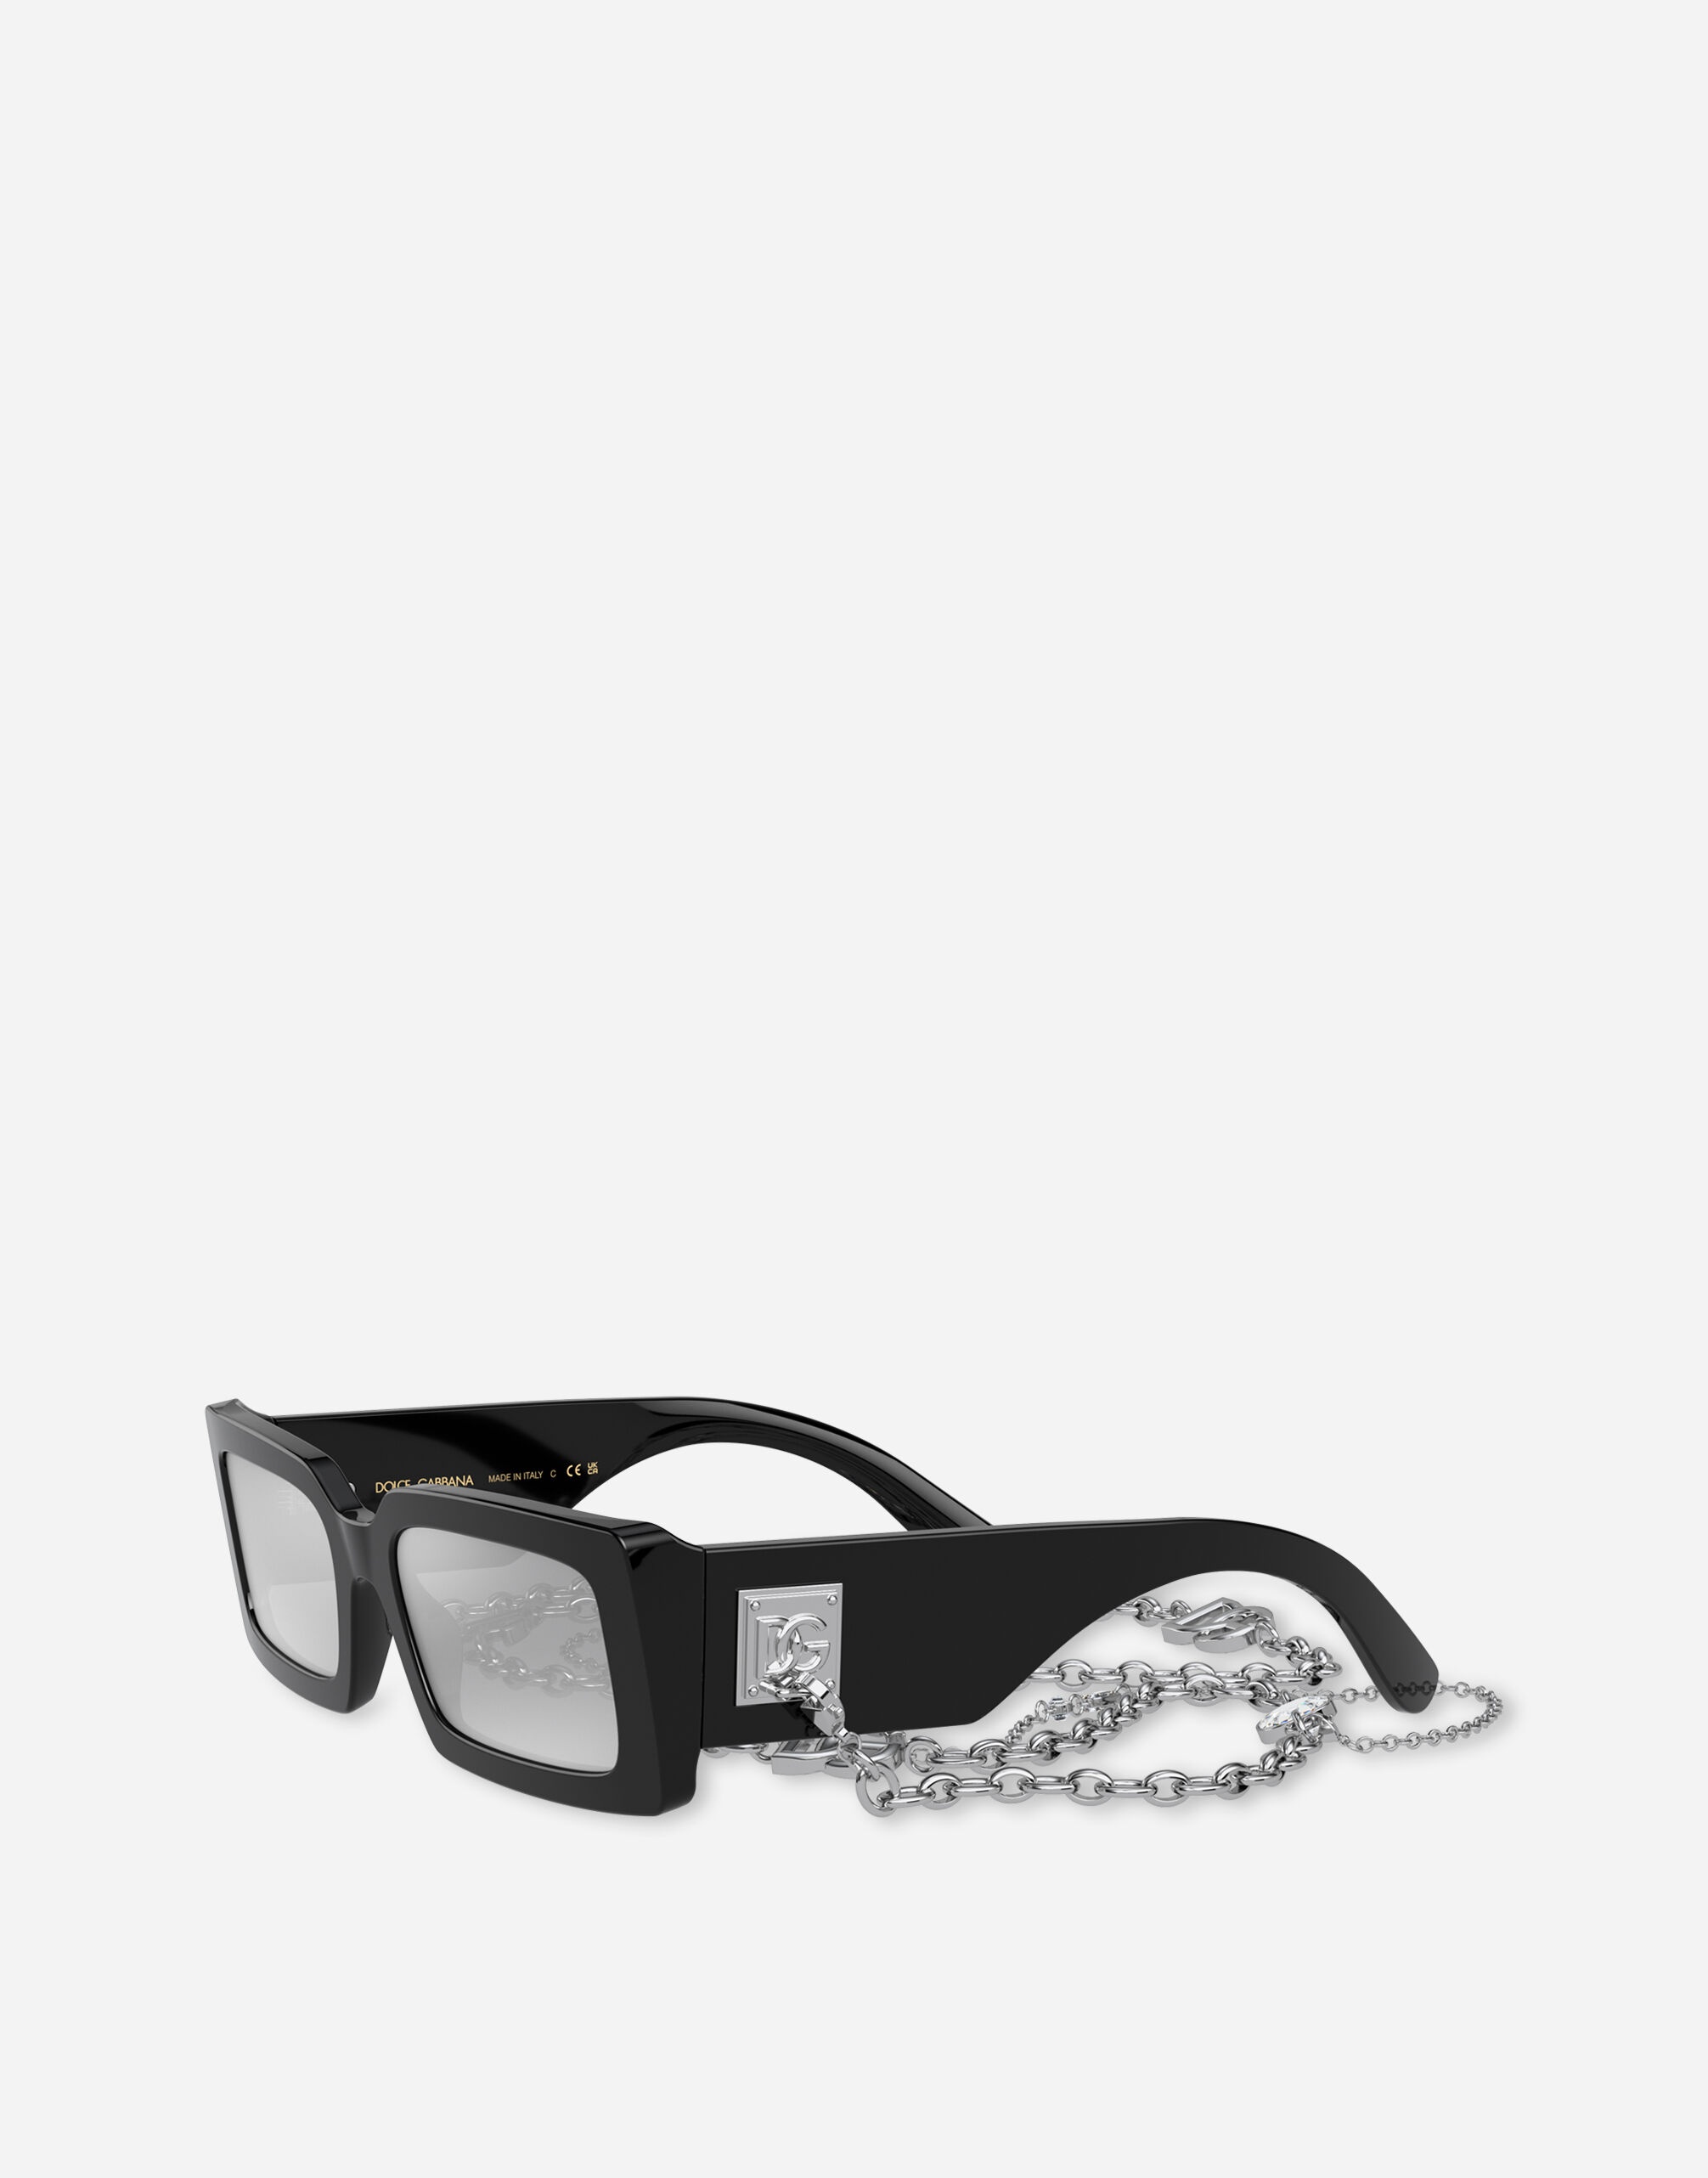 Zebra sunglasses - 2